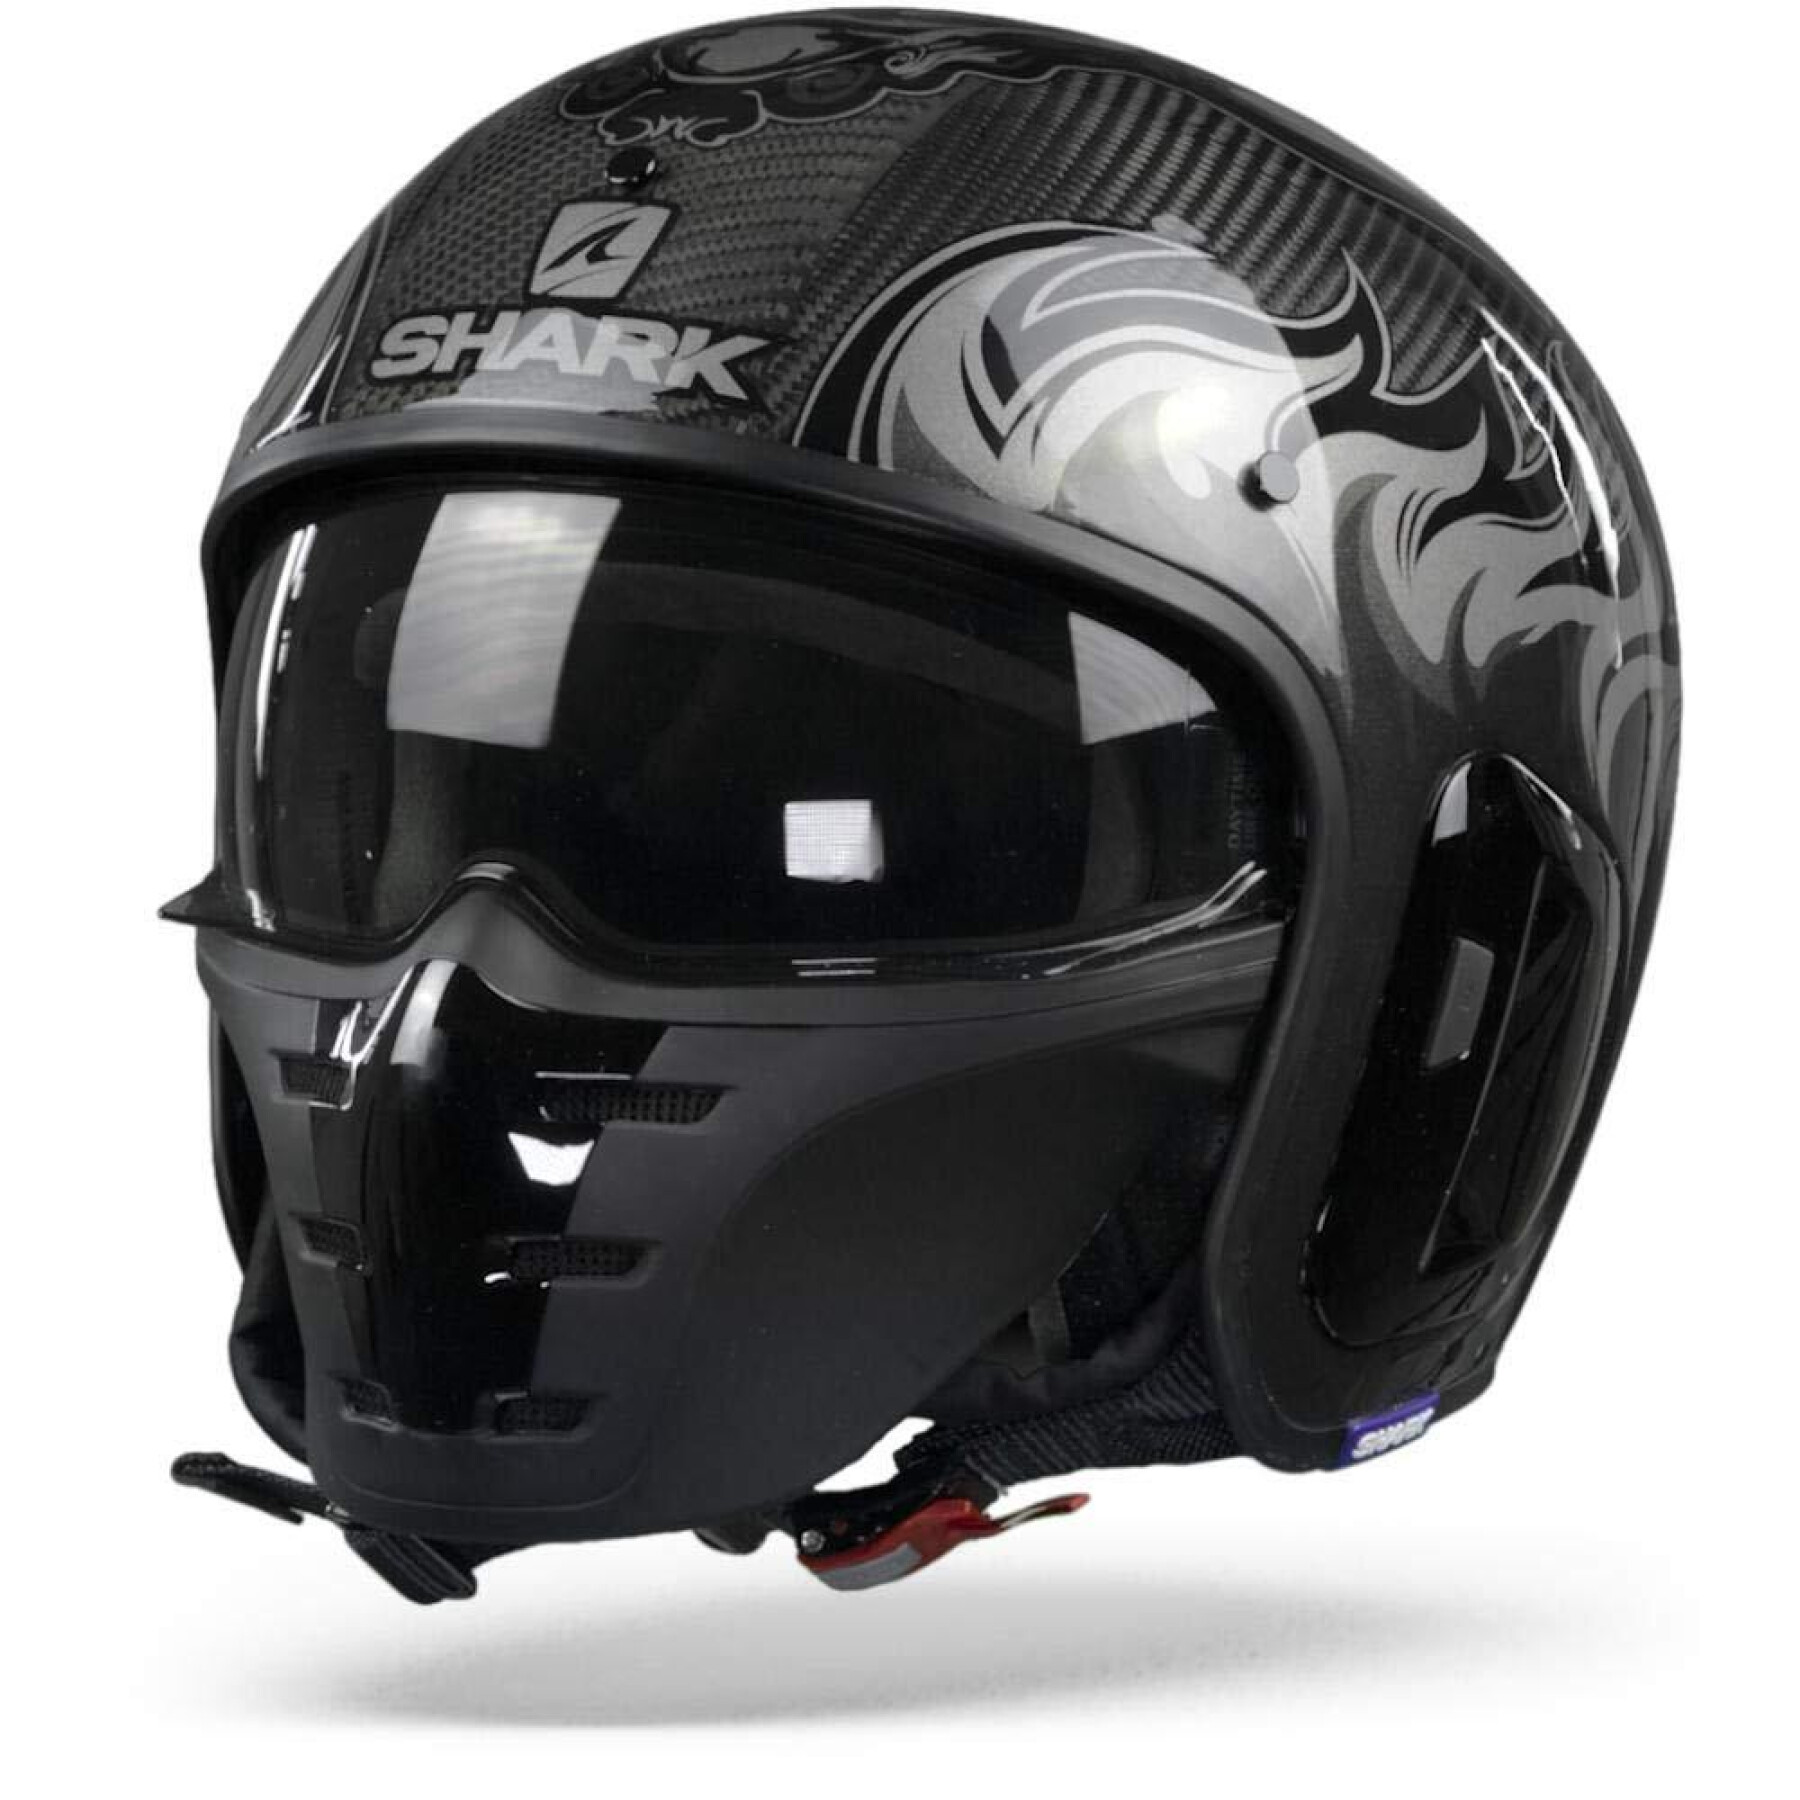 Jet motorcycle helmet Shark s-drak 2 carbon dagon